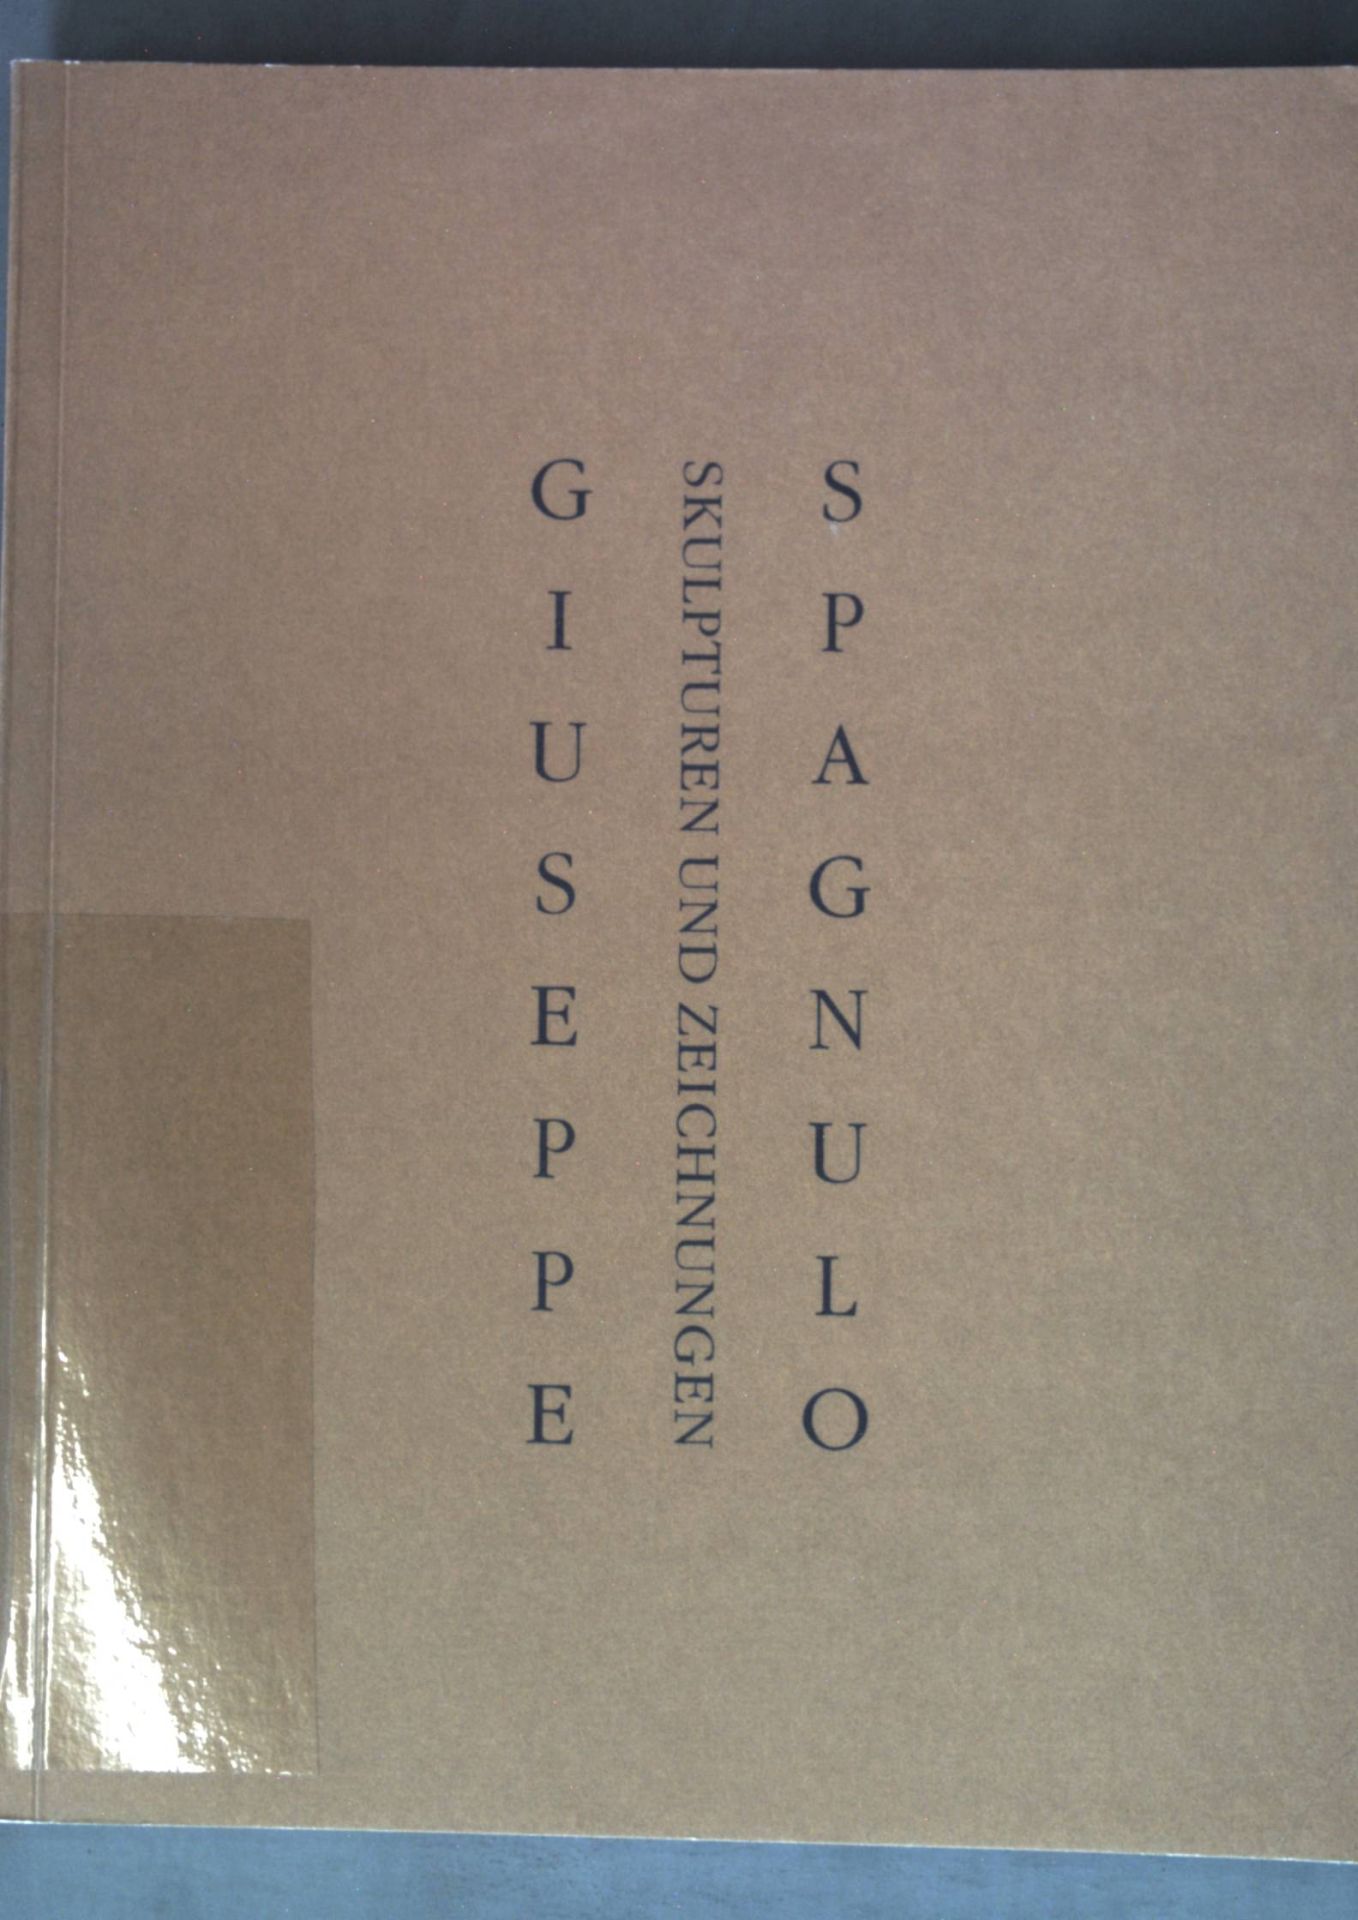 Giuseppe Spagnulo : Skulpturen und Zeichnungen ; anlässlich der Ausstellungen: Württembergischer Kunstverein Stuttgart, 21. Februar - 7. April 1991 ; Museum am Ostwall, Dortmund, 1992